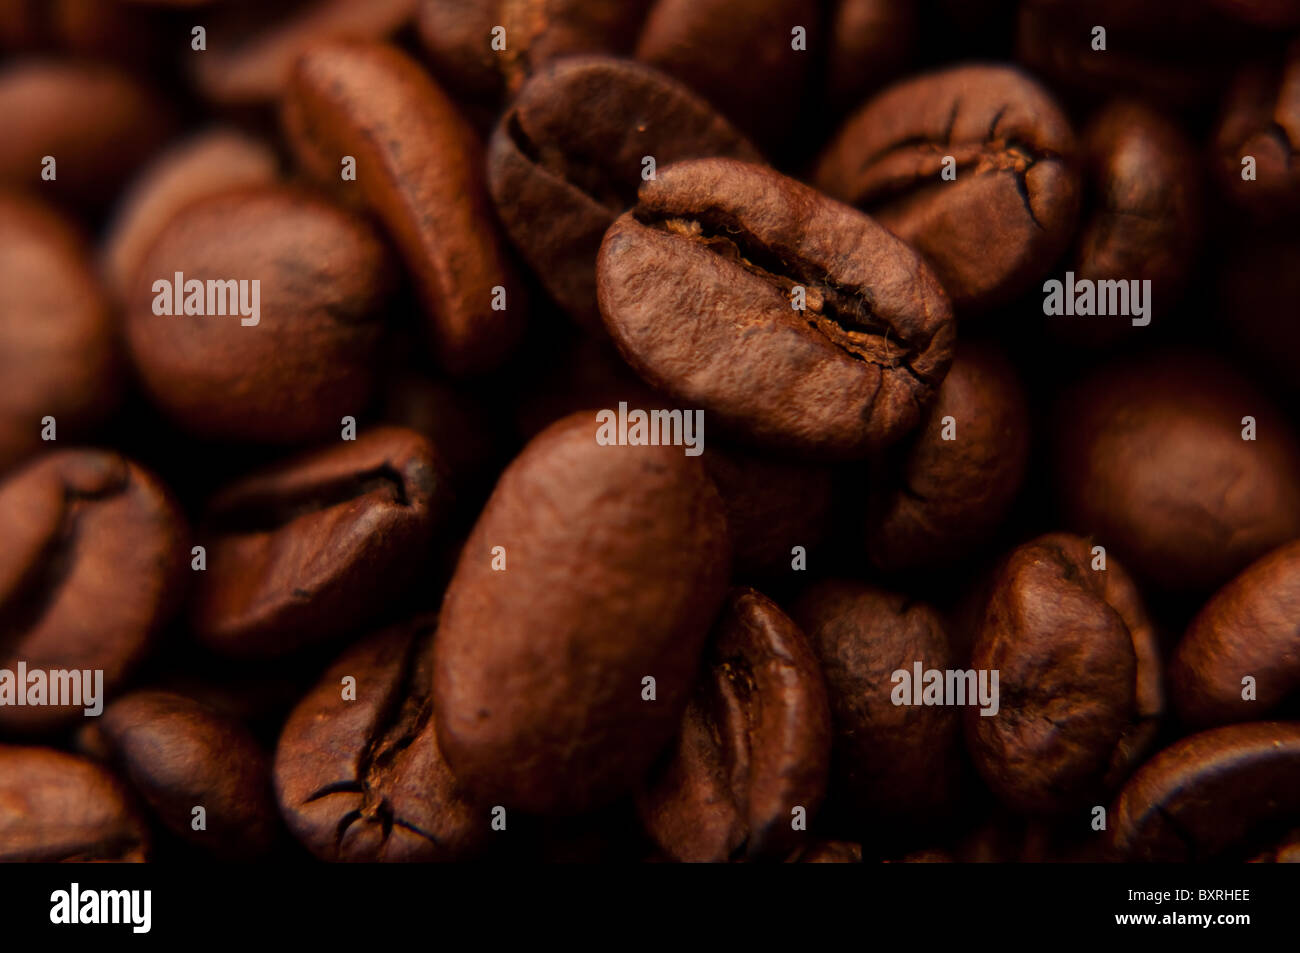 Beau brun, les grains de café, près de l'image Banque D'Images